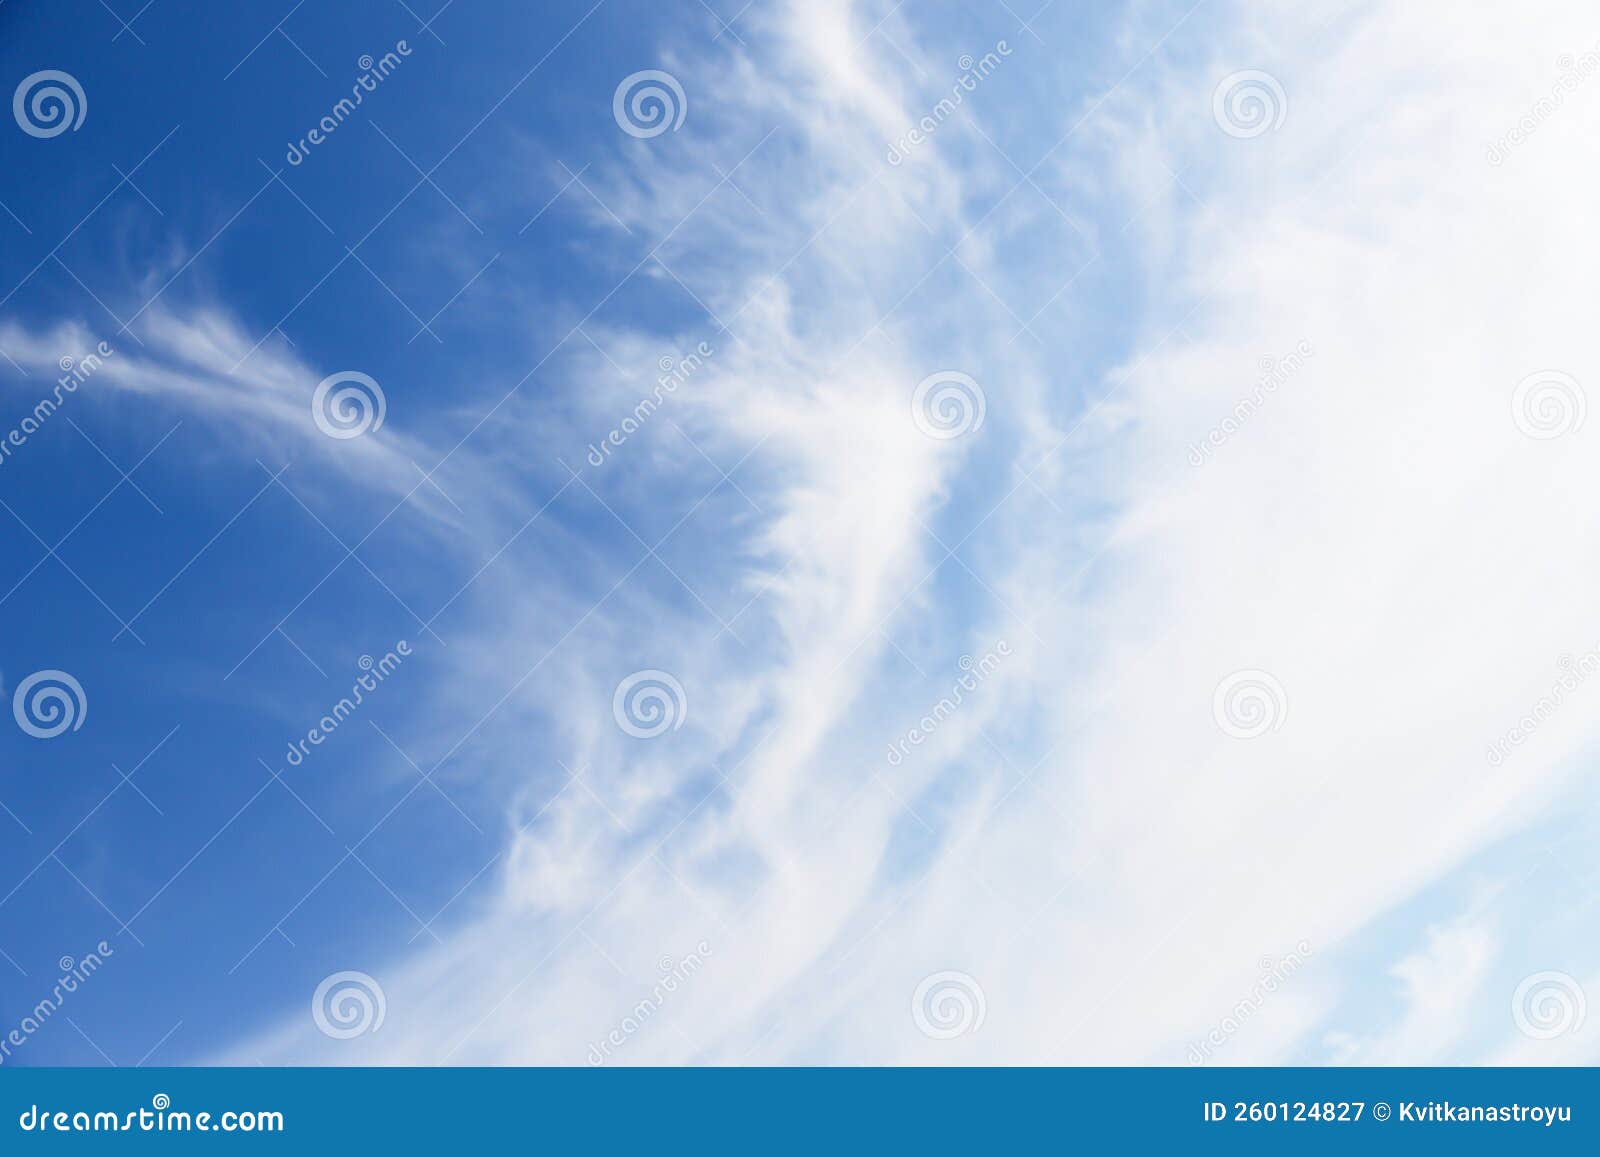 white cirro-cumulus clouds in soft blue sky